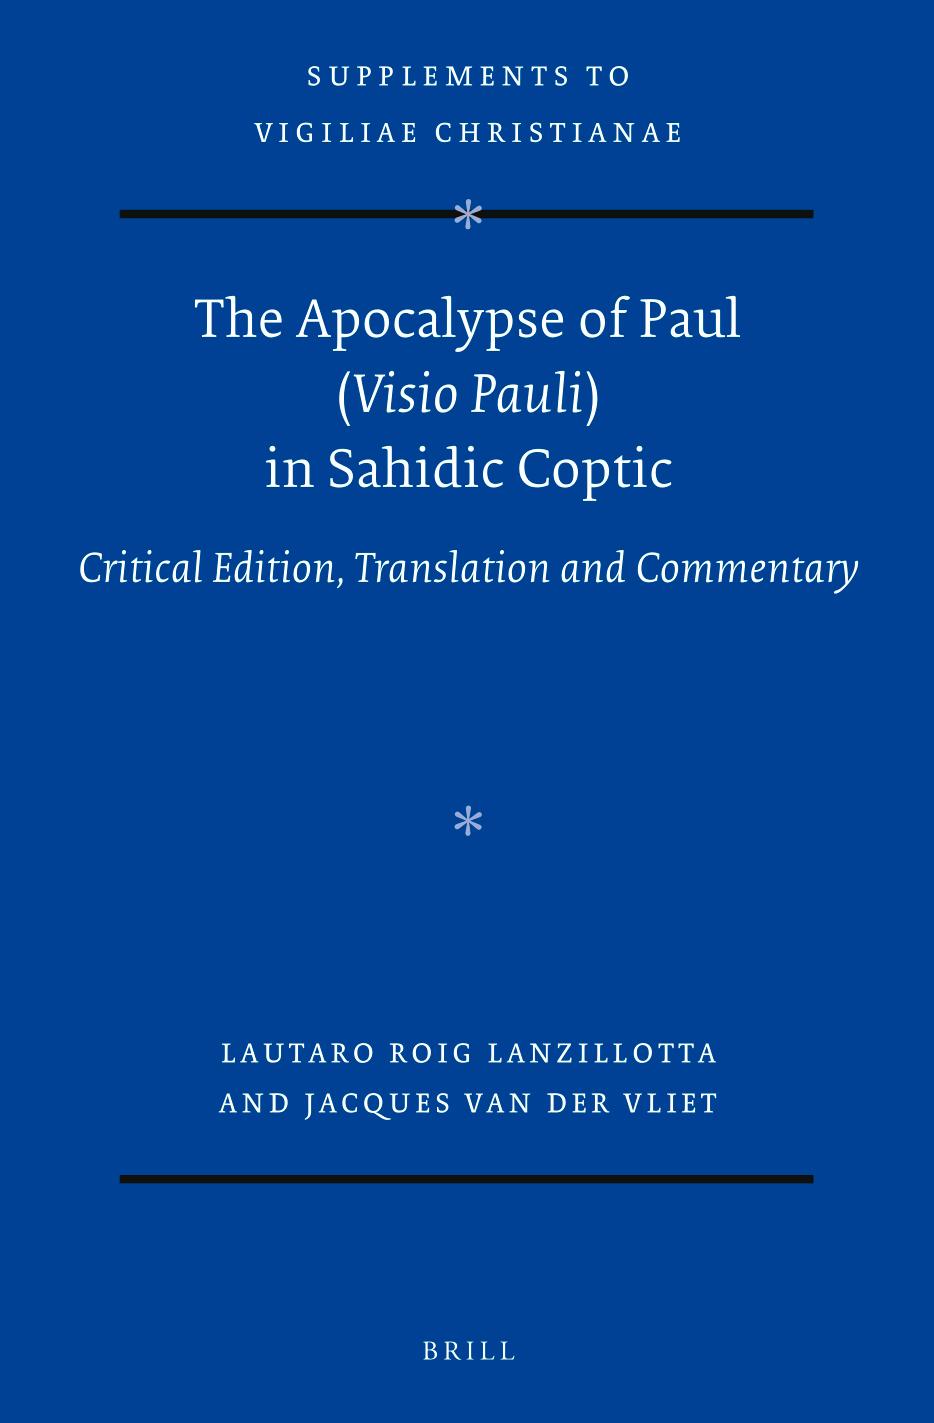 The Apocalypse of Paul (Visio Pauli) in Sahidic Coptic by Lautaro Roig Lanzillotta;Jacques van der Vliet;